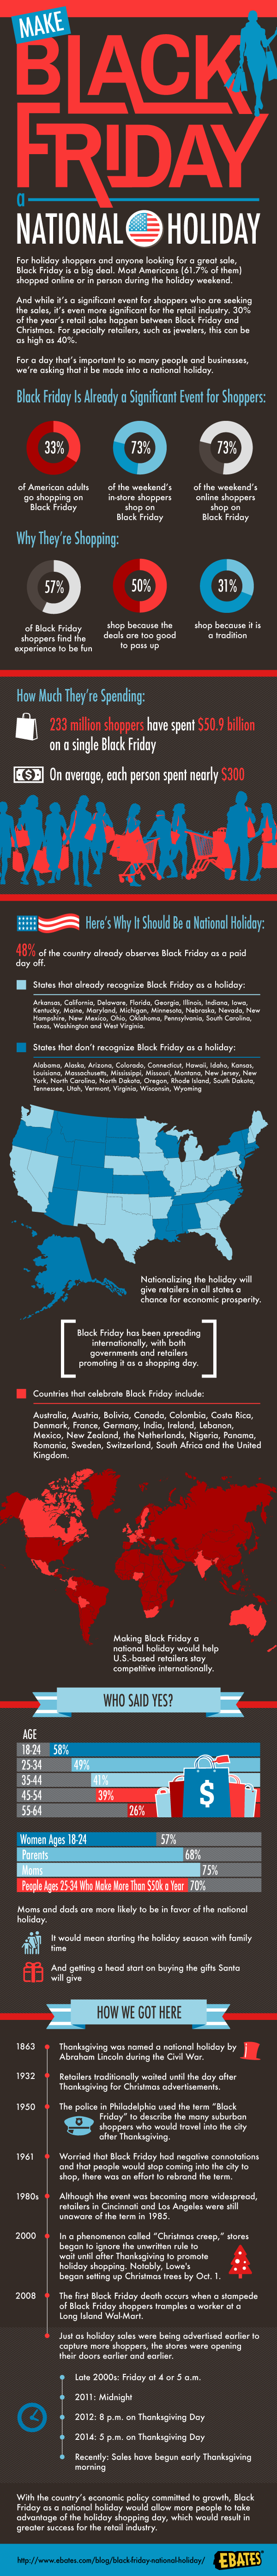 Make Black Friday a National Holiday